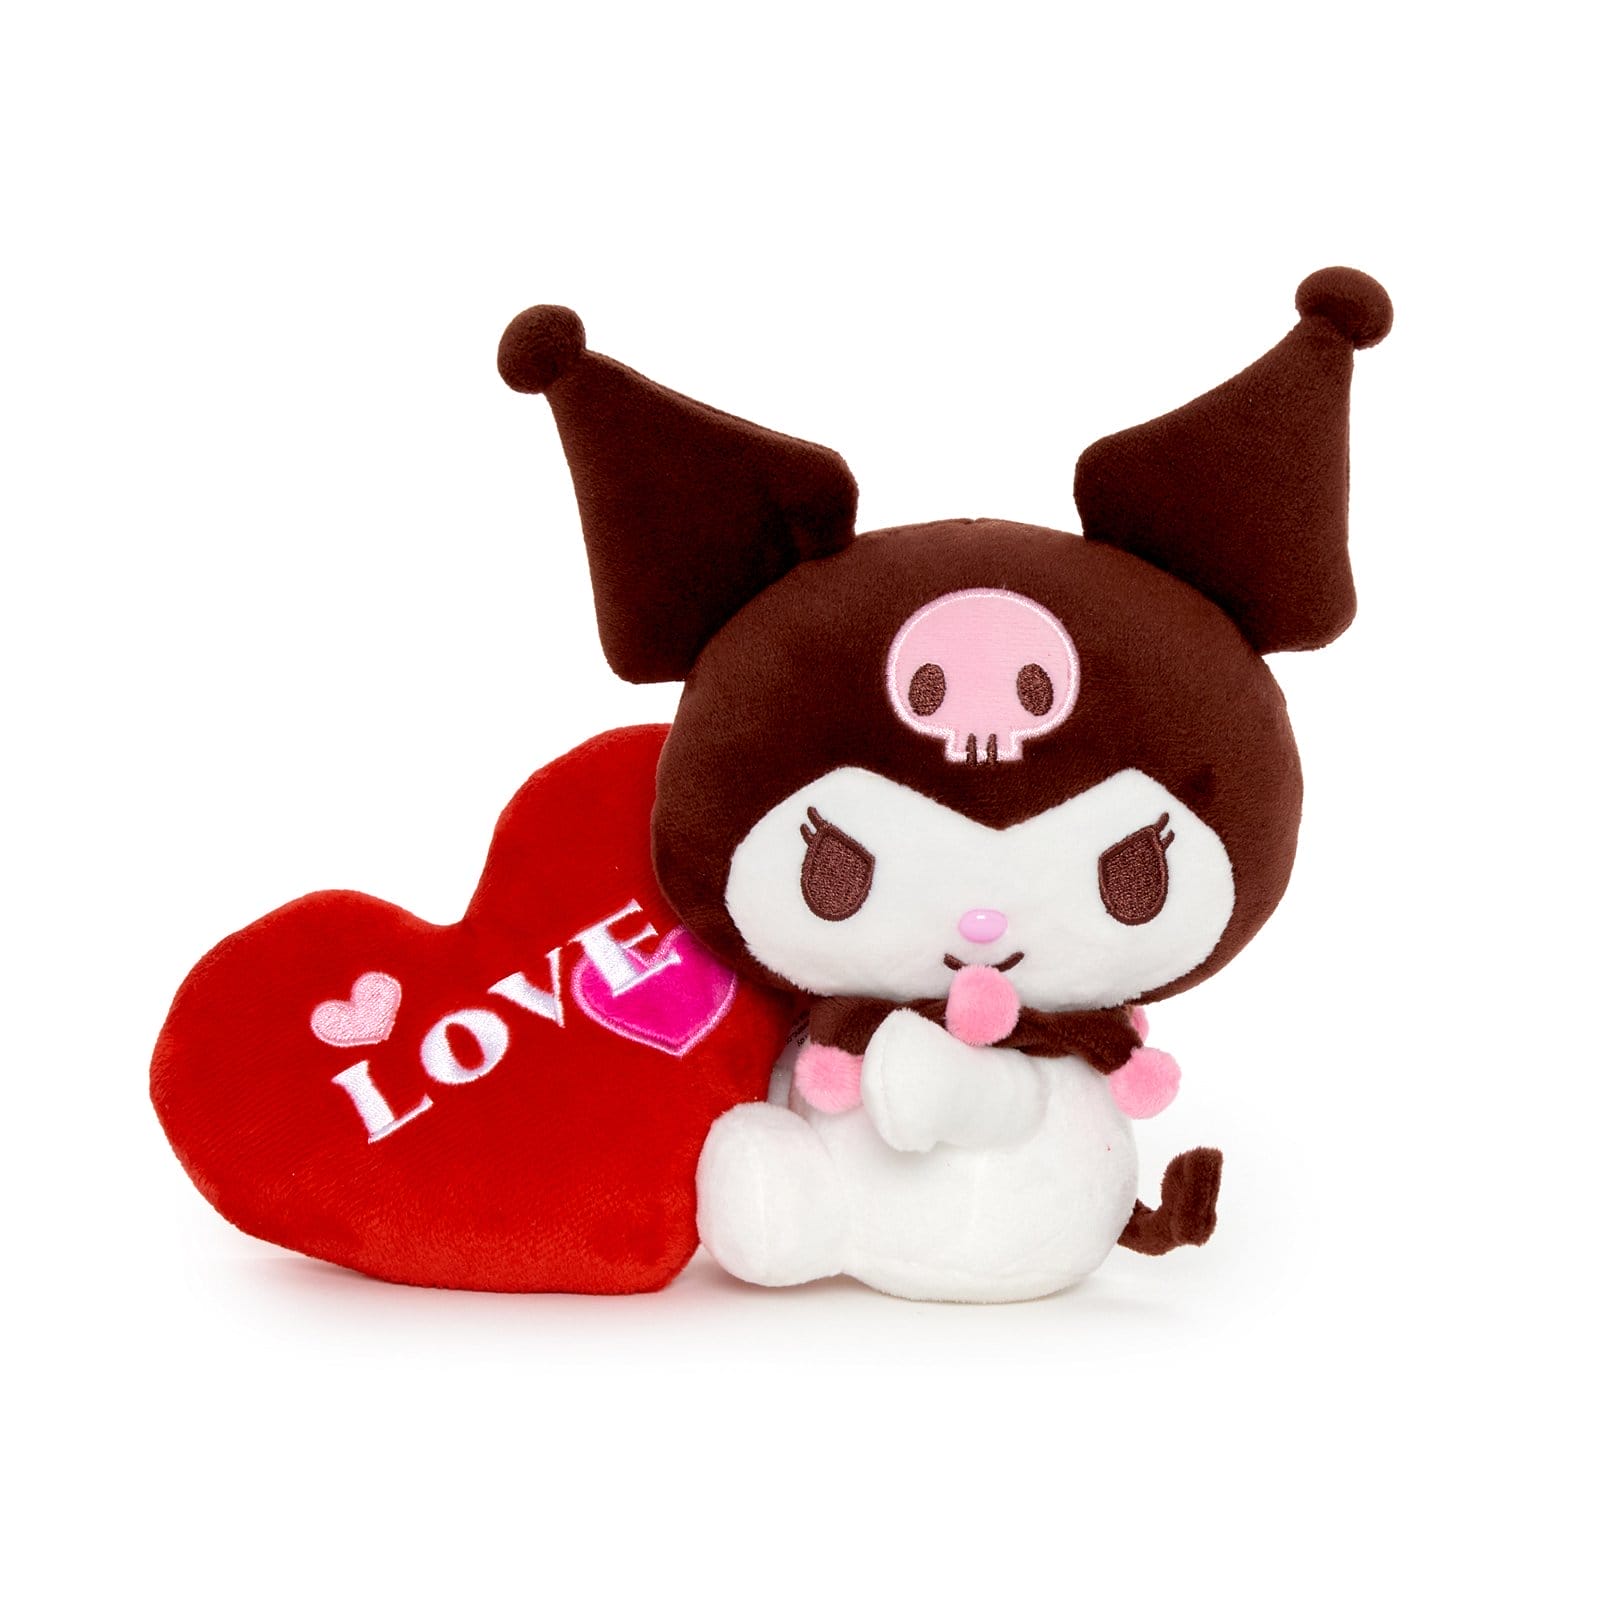 Kuromi 6" Bean Doll Plush (Lotta Love Series)